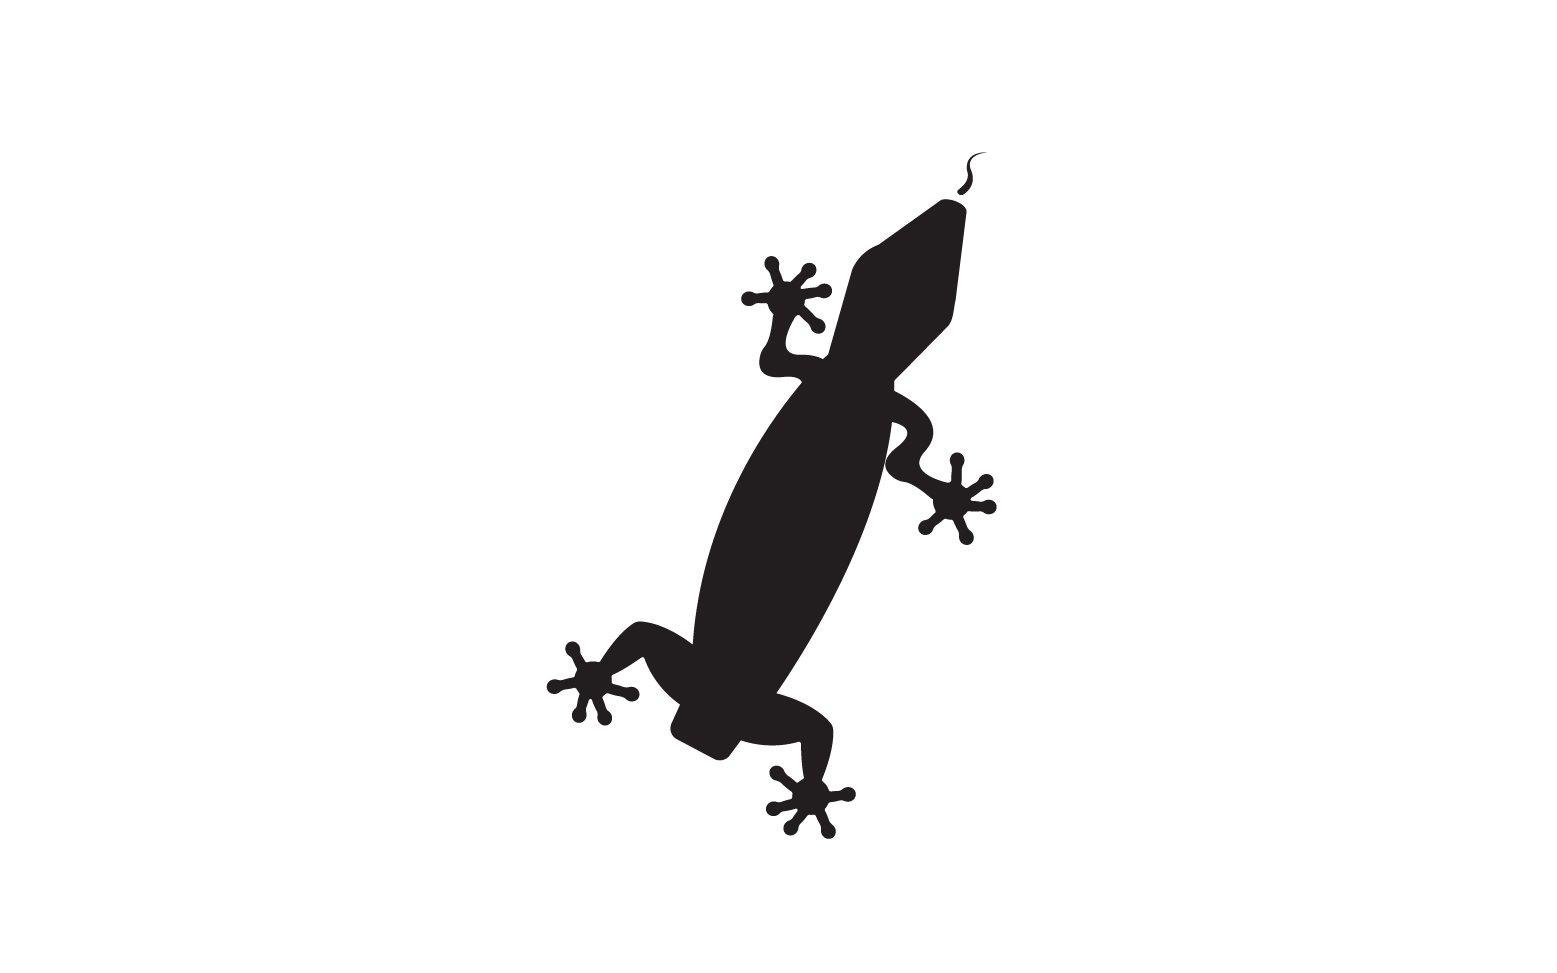 Lizard chameleon home lizard logo v24